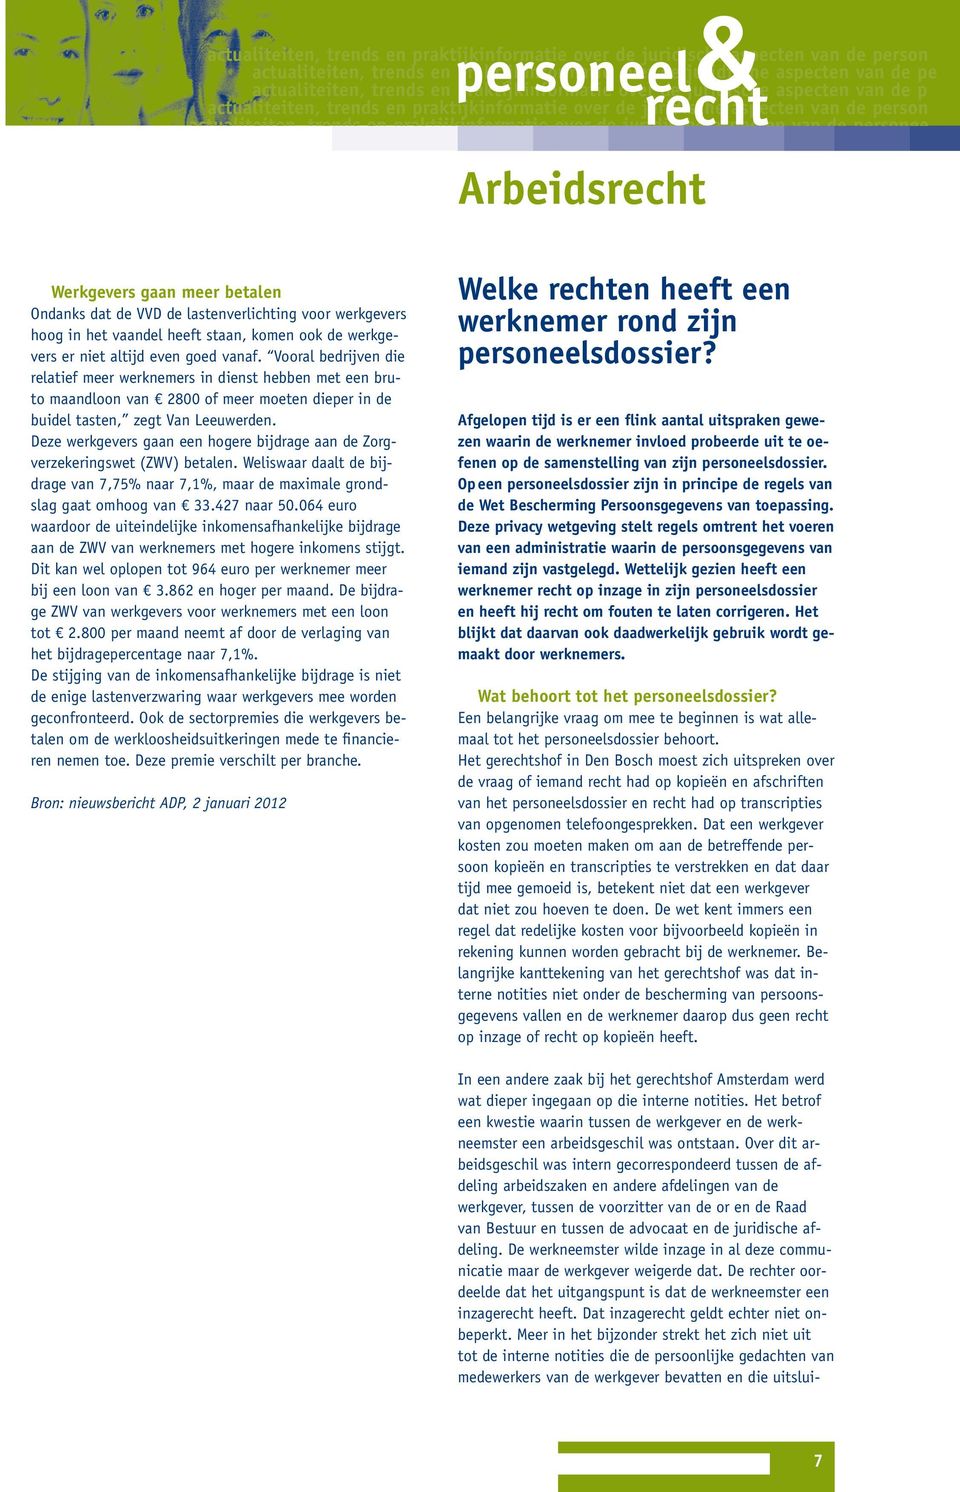 Vooral bedrijven die relatief meer werknemers in dienst hebben met een bruto maandloon van 2800 of meer moeten dieper in de buidel tasten, zegt Van Leeuwerden.